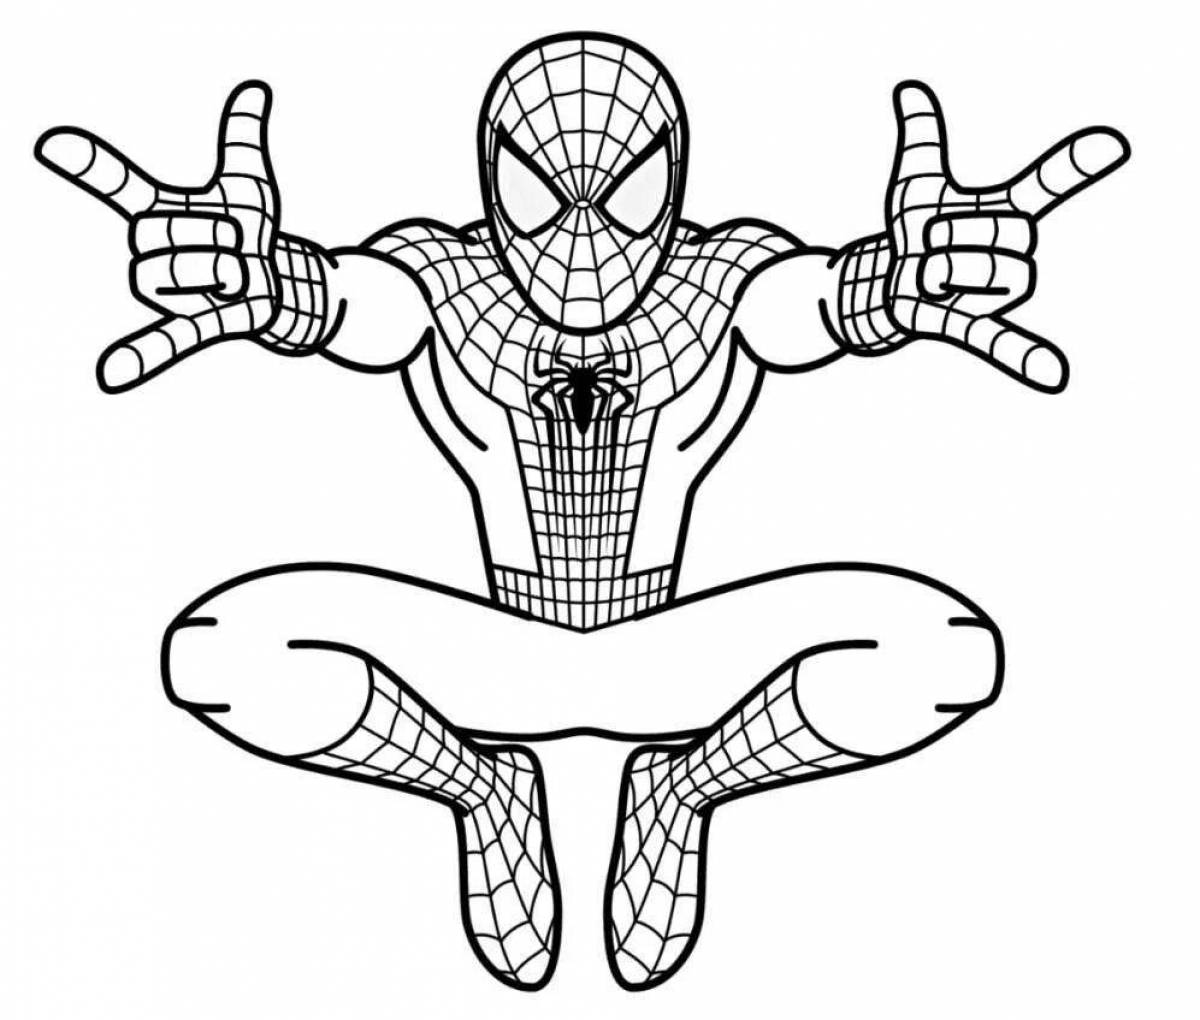 Развлекательная раскраска человека-паука для детей 6-7 лет